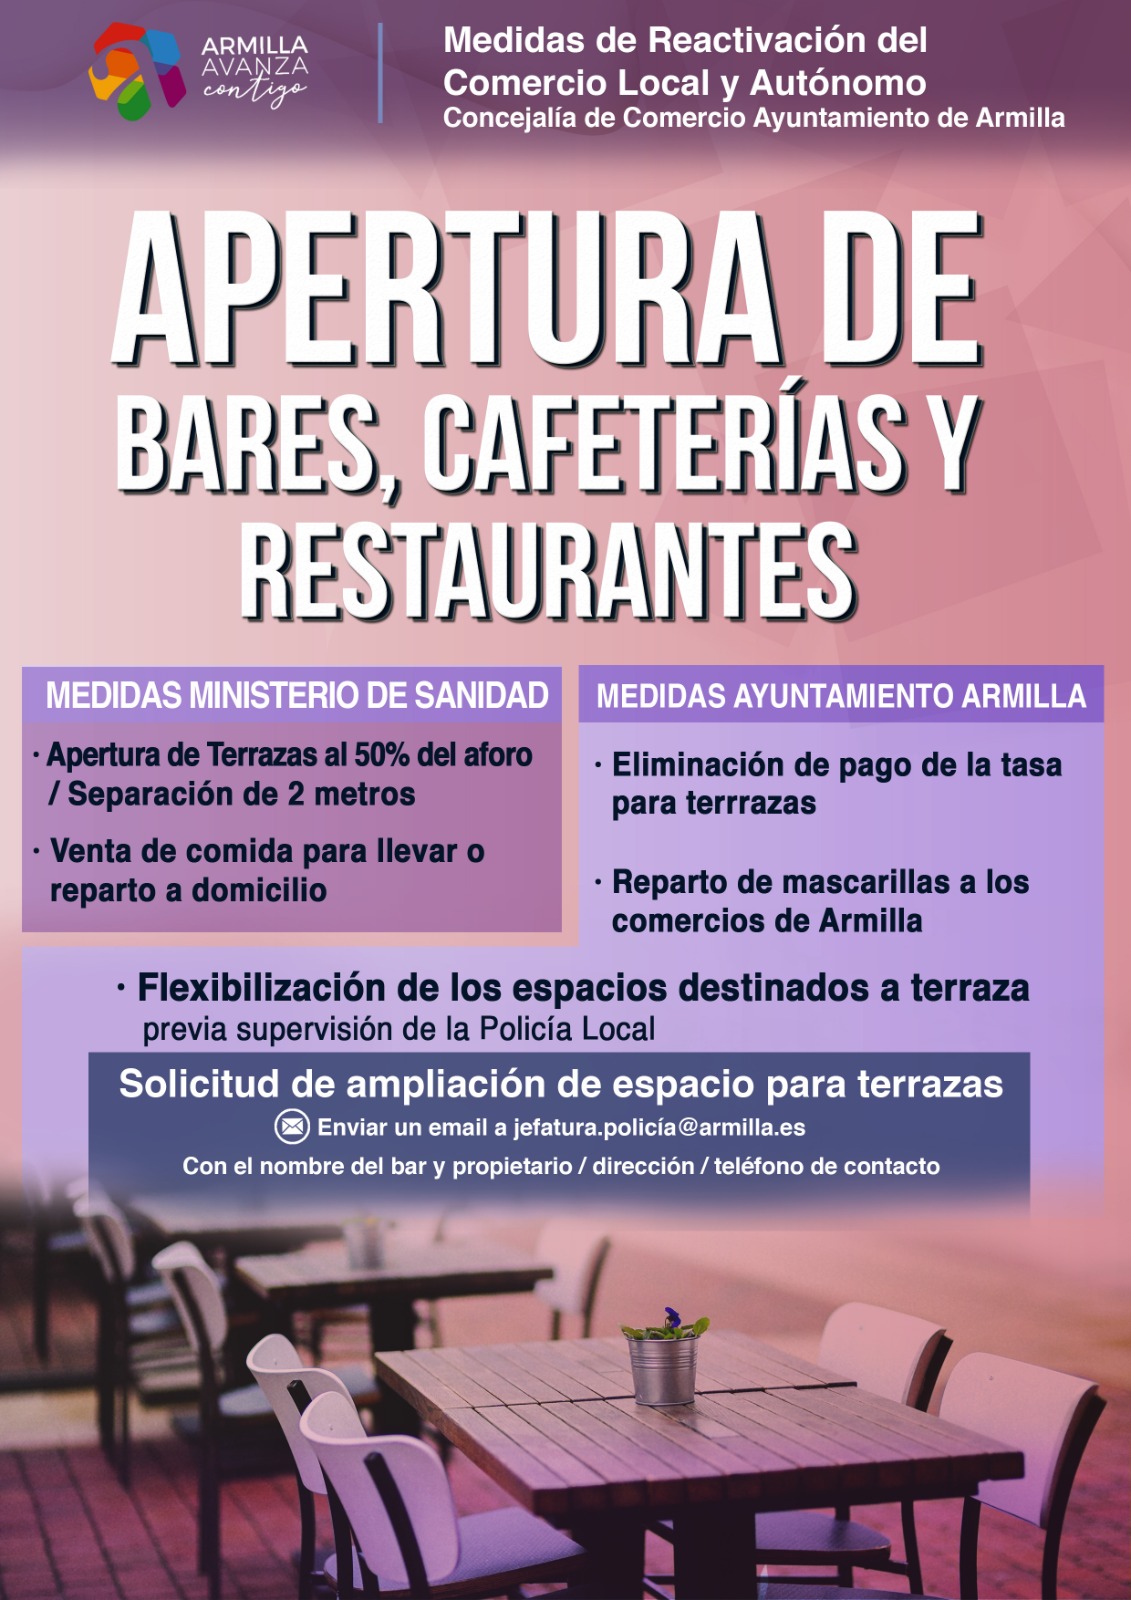 Bares, cafeterías y restaurantes de Armilla pueden solicitar la ampliación de las terrazas